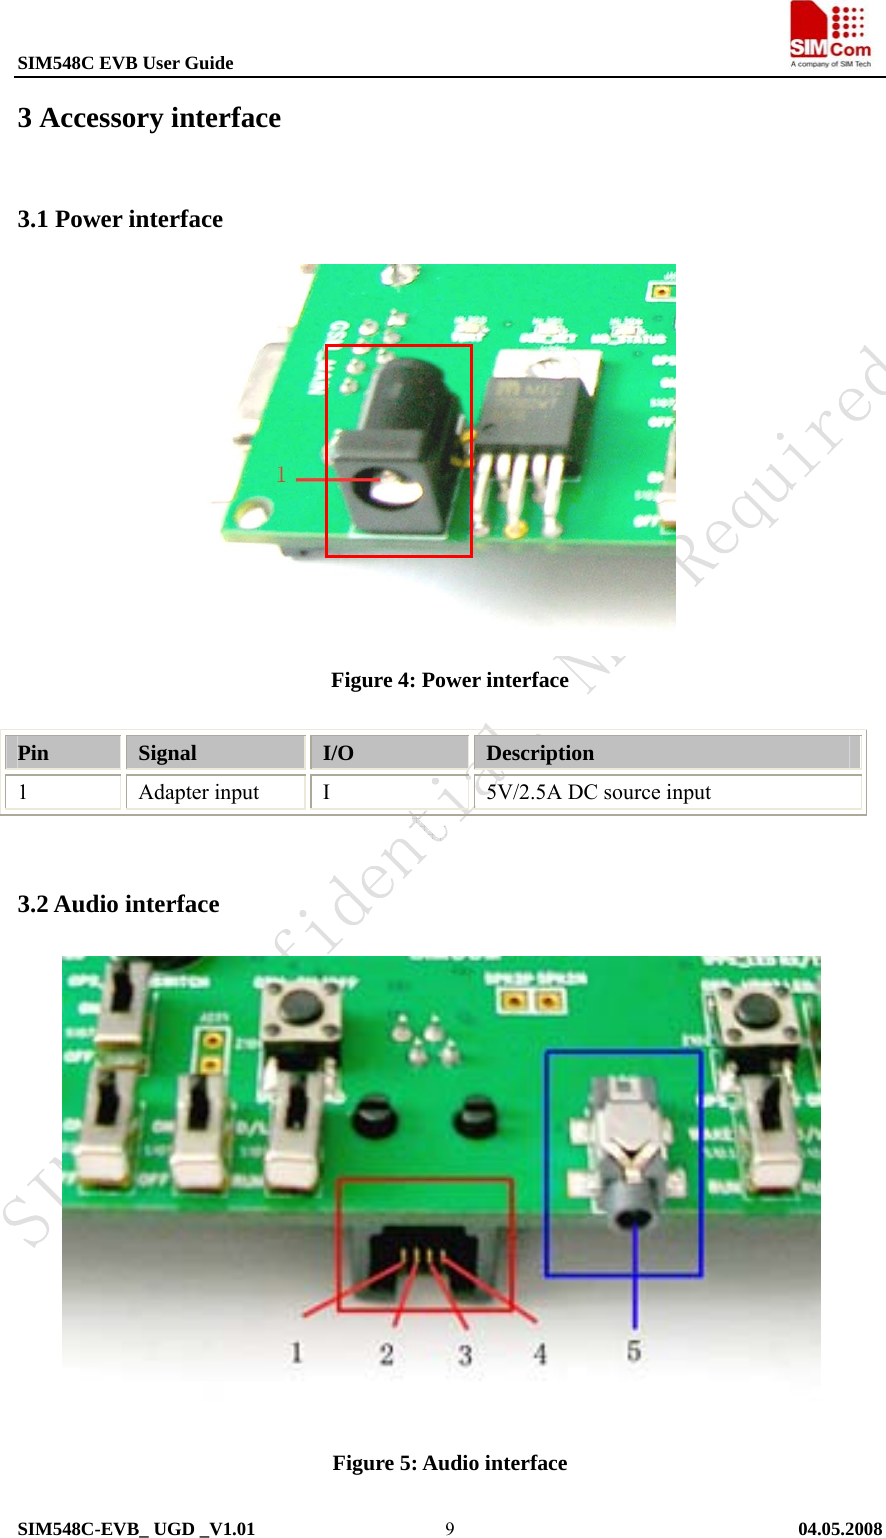 SIM548C EVB User Guide                                                             SIM548C-EVB_ UGD _V1.01   04.05.2008   93 Accessory interface 3.1 Power interface             Figure 4: Power interface  Pin  Signal  I/O  Description 1 Adapter input I 5V/2.5A DC source input  3.2 Audio interface                Figure 5: Audio interface  